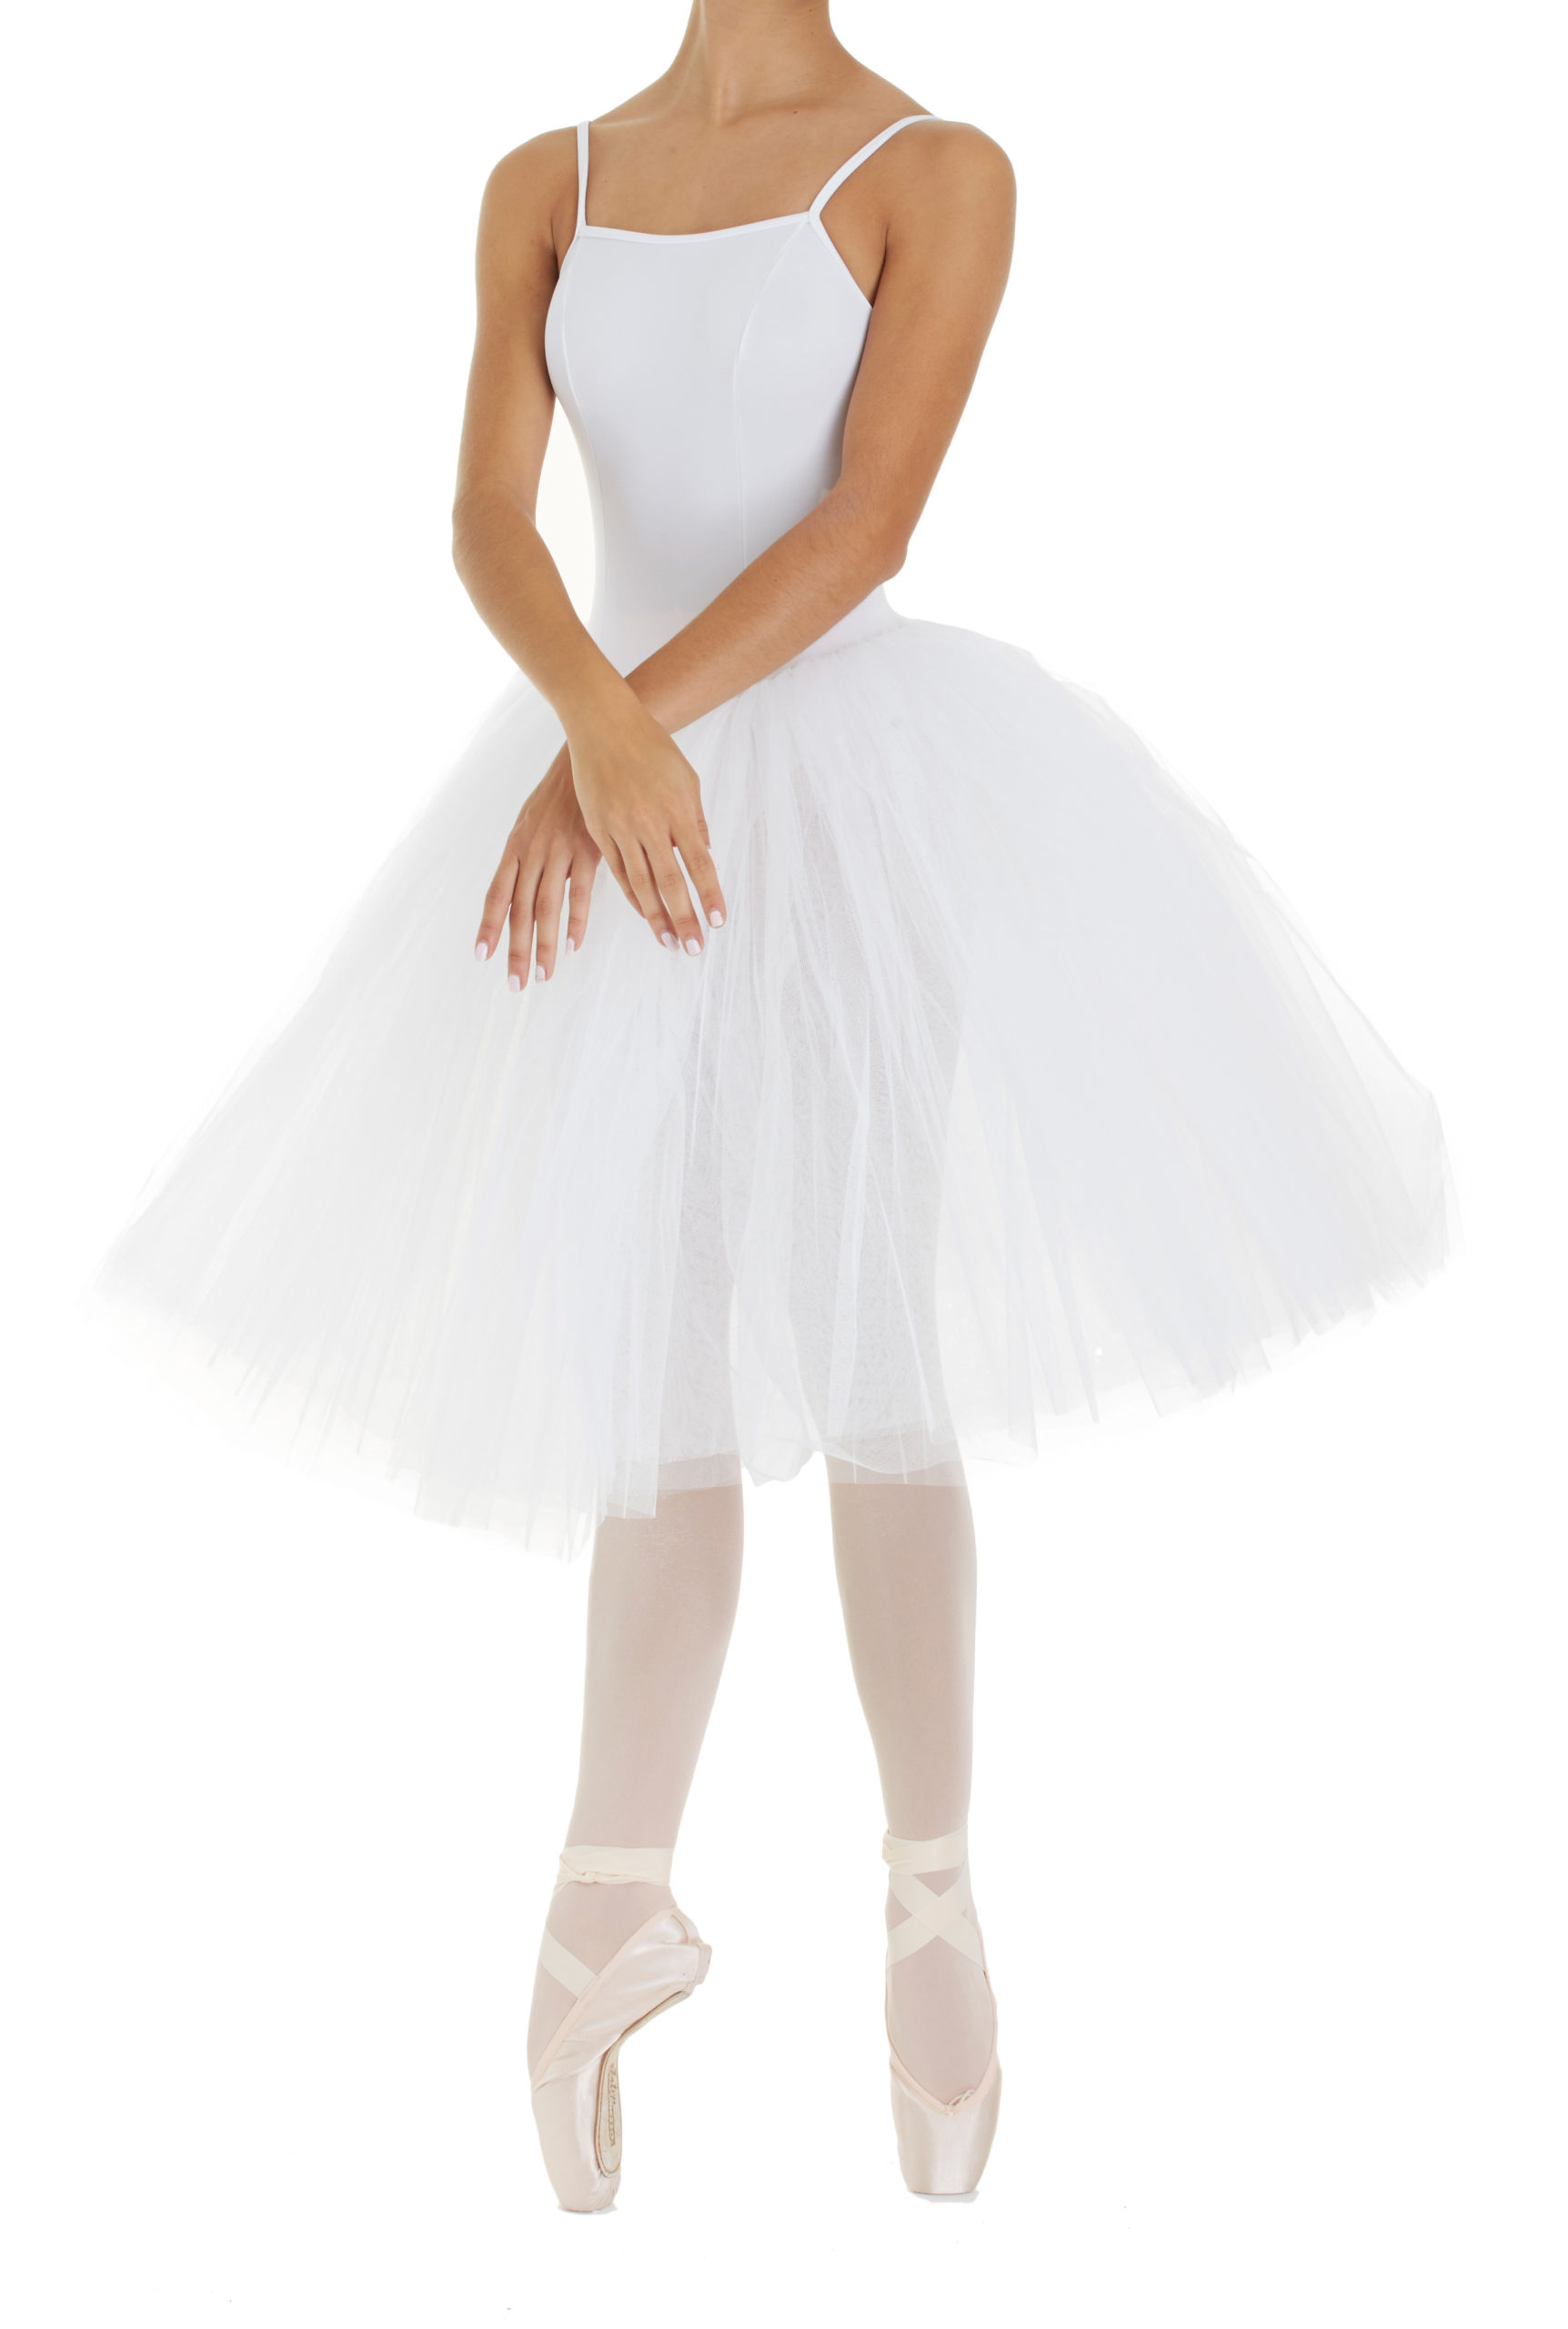 Sukienka z body baletowa model 3487 marki Intermezzo